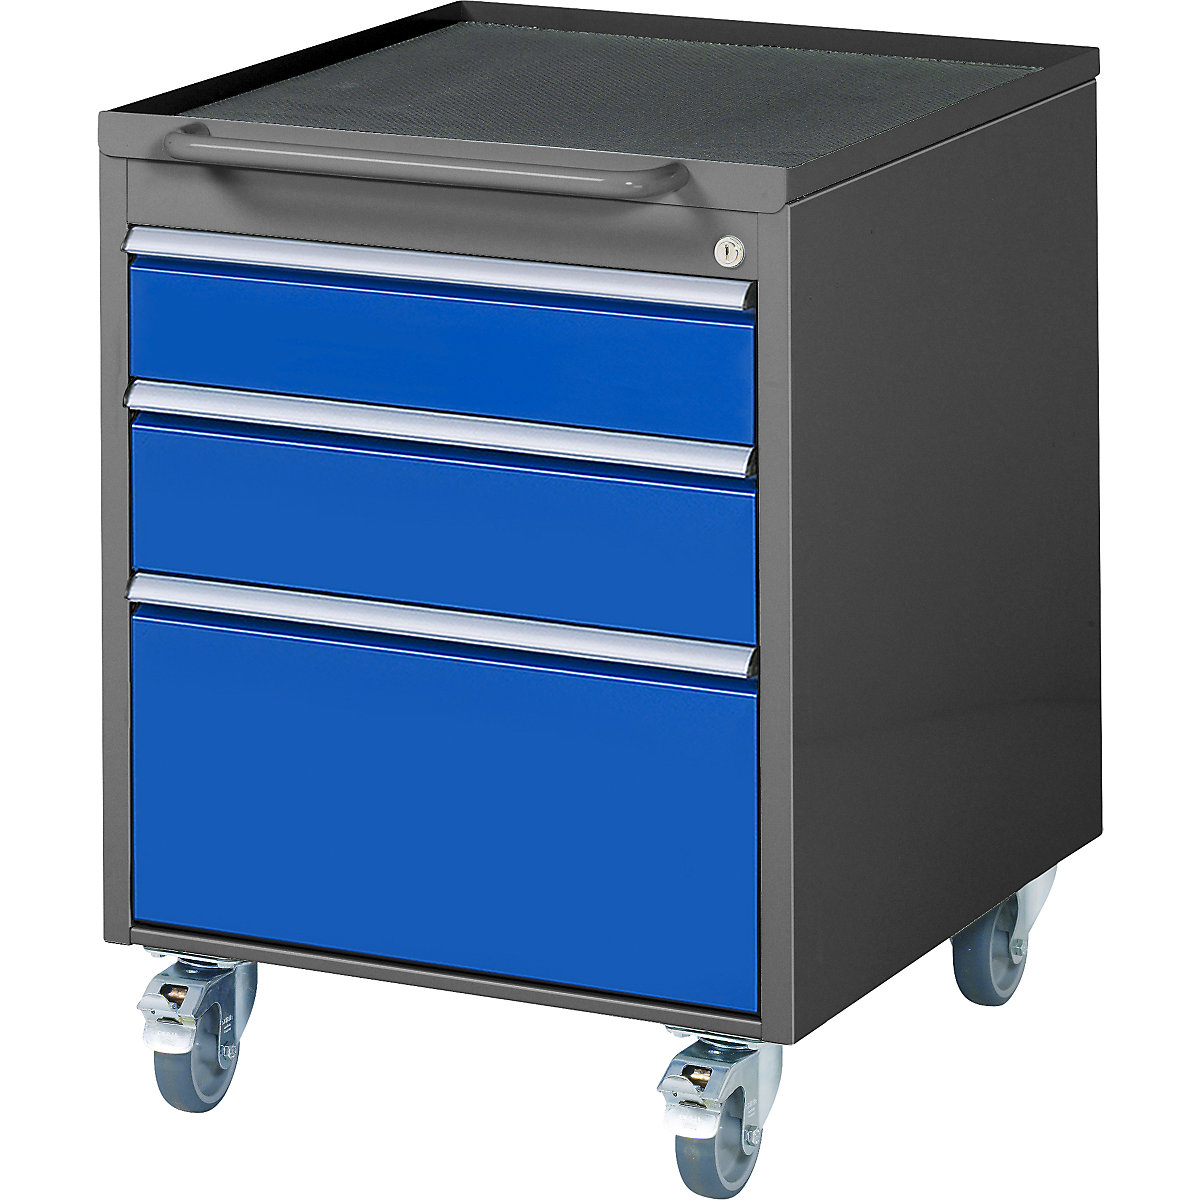 Pojazdný kontajner – RAU, v x š x h 765 x 580 x 650 mm, 3 zásuvky, antracitová metalíza / enciánová modrá-6